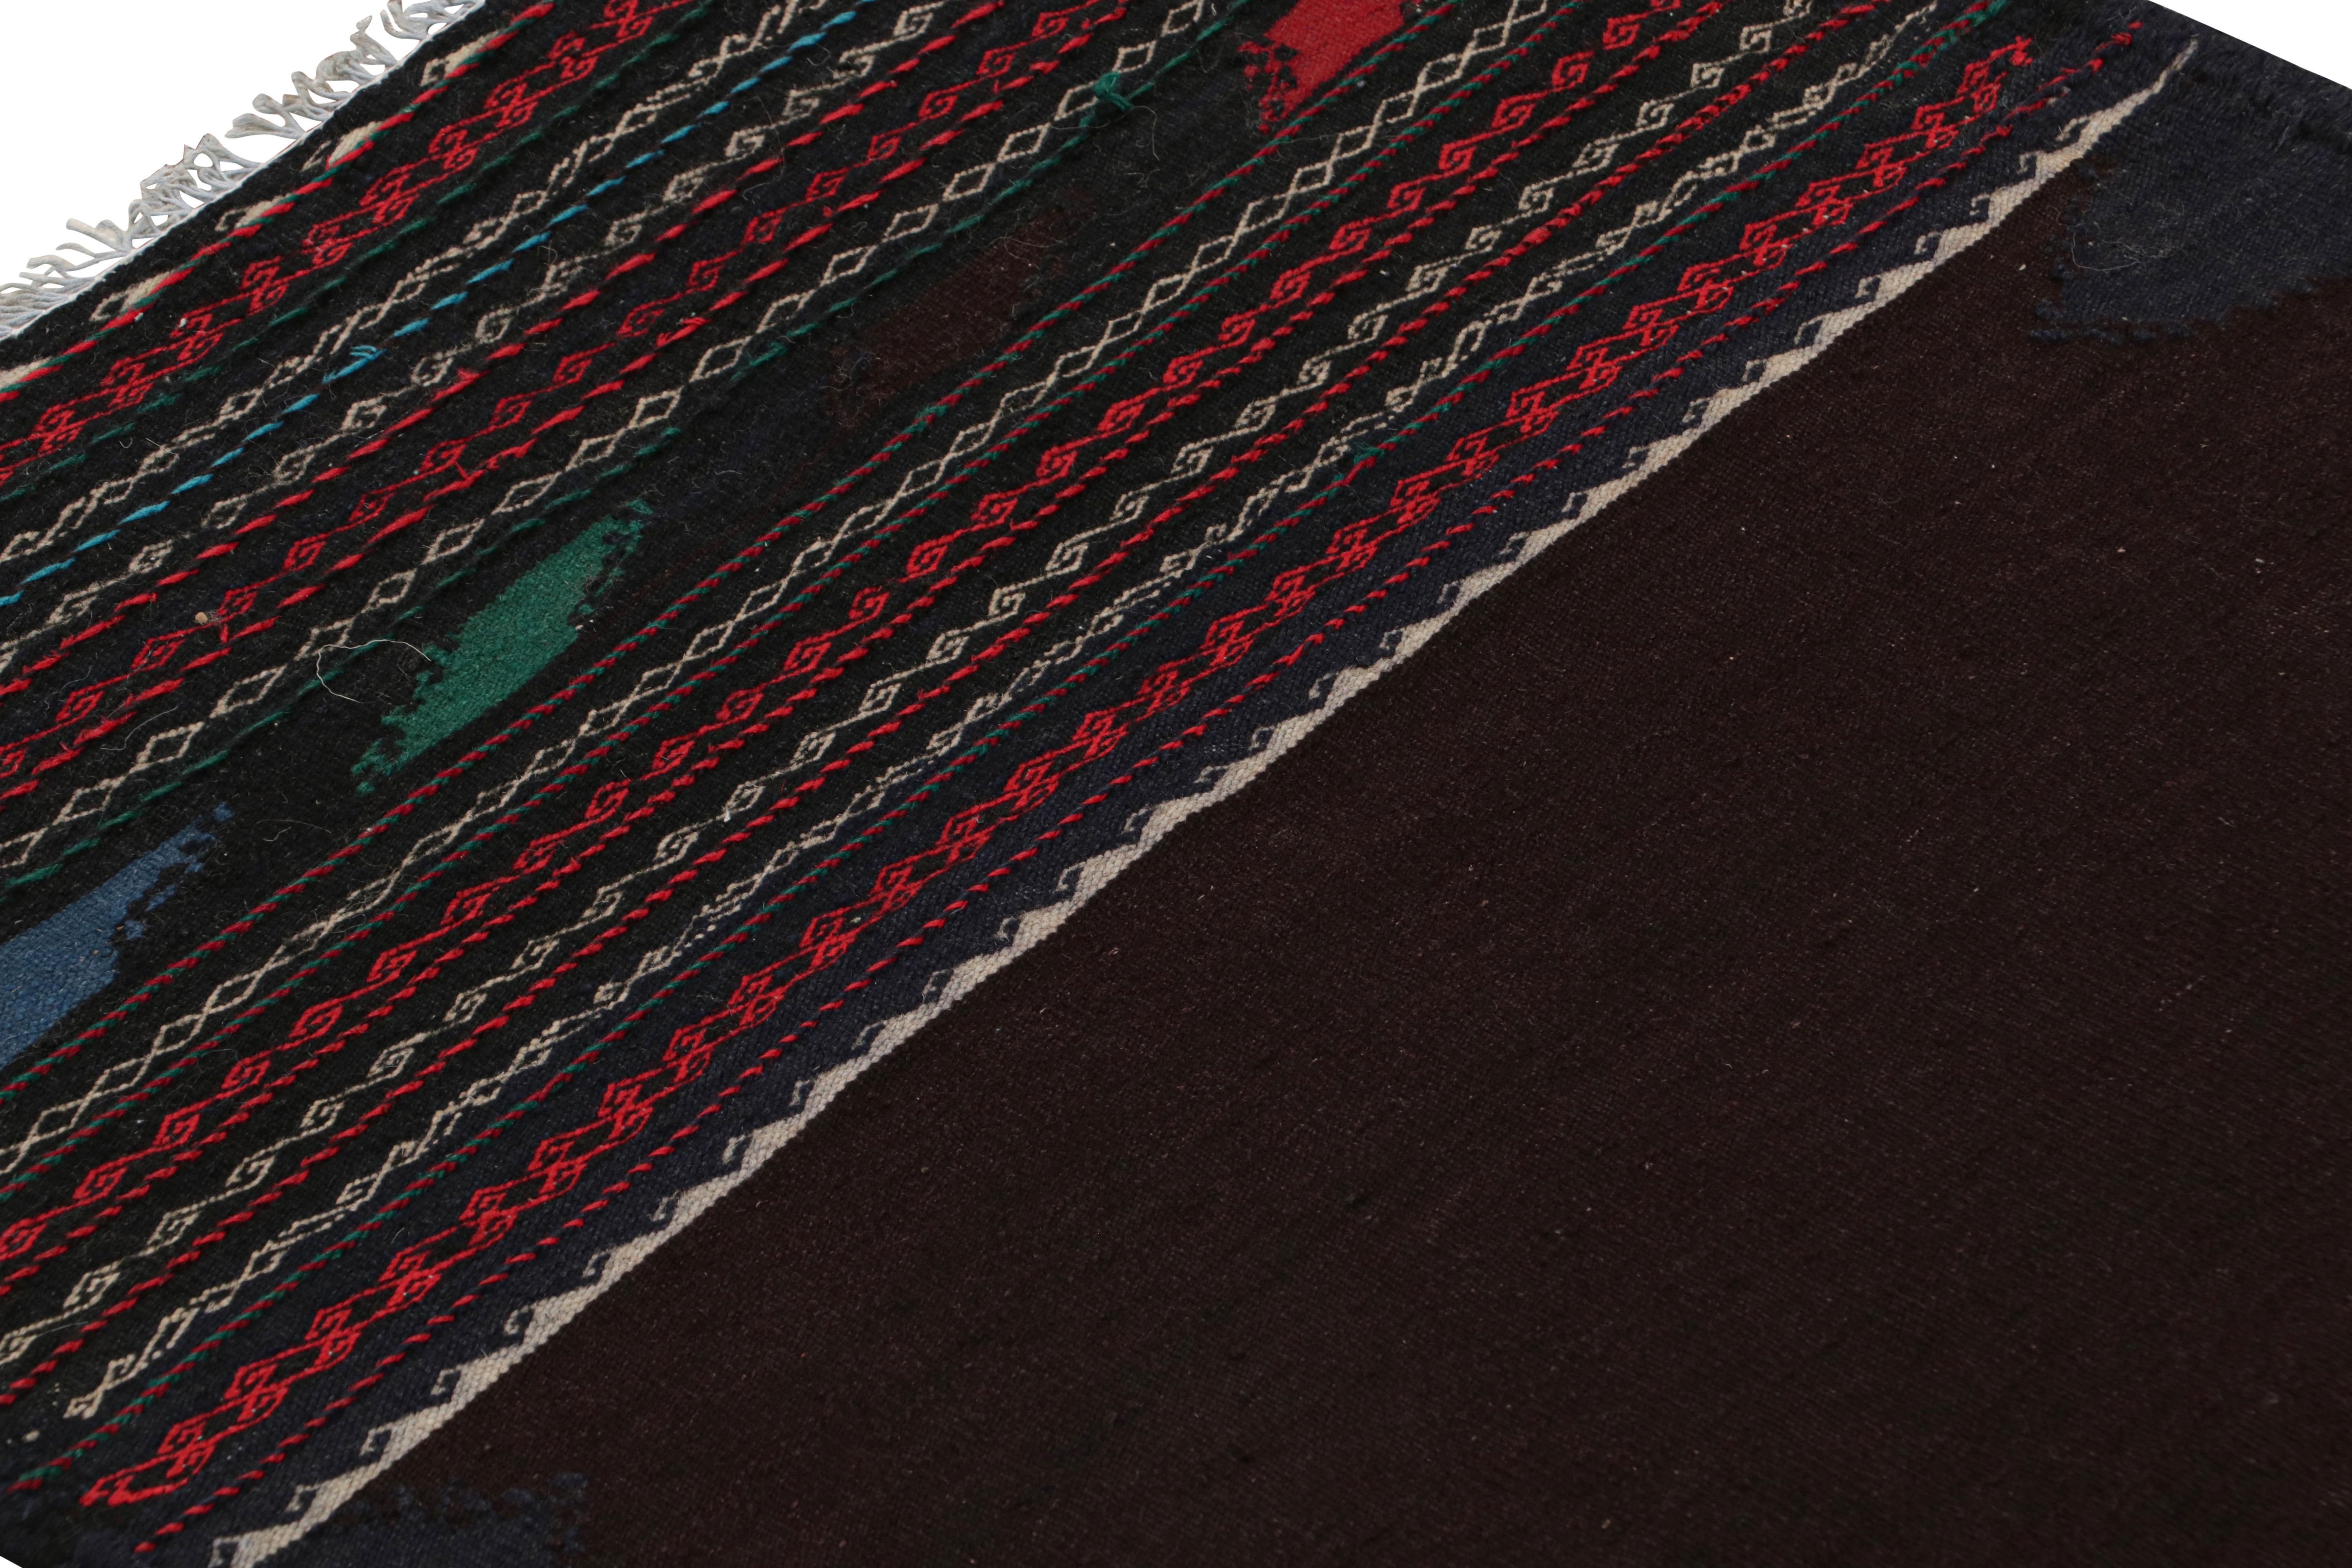 Dieser 2×6 große afghanische Stammes-Kilim-Läufer aus handgewebter Wolle (ca. 1950-1960) ist ein Sammlerstück, das im Nomadenalltag möglicherweise als Tischdecke verwendet wurde, ähnlich wie die persischen Sofreh-Kilims.

Über das Design: 

Dieses